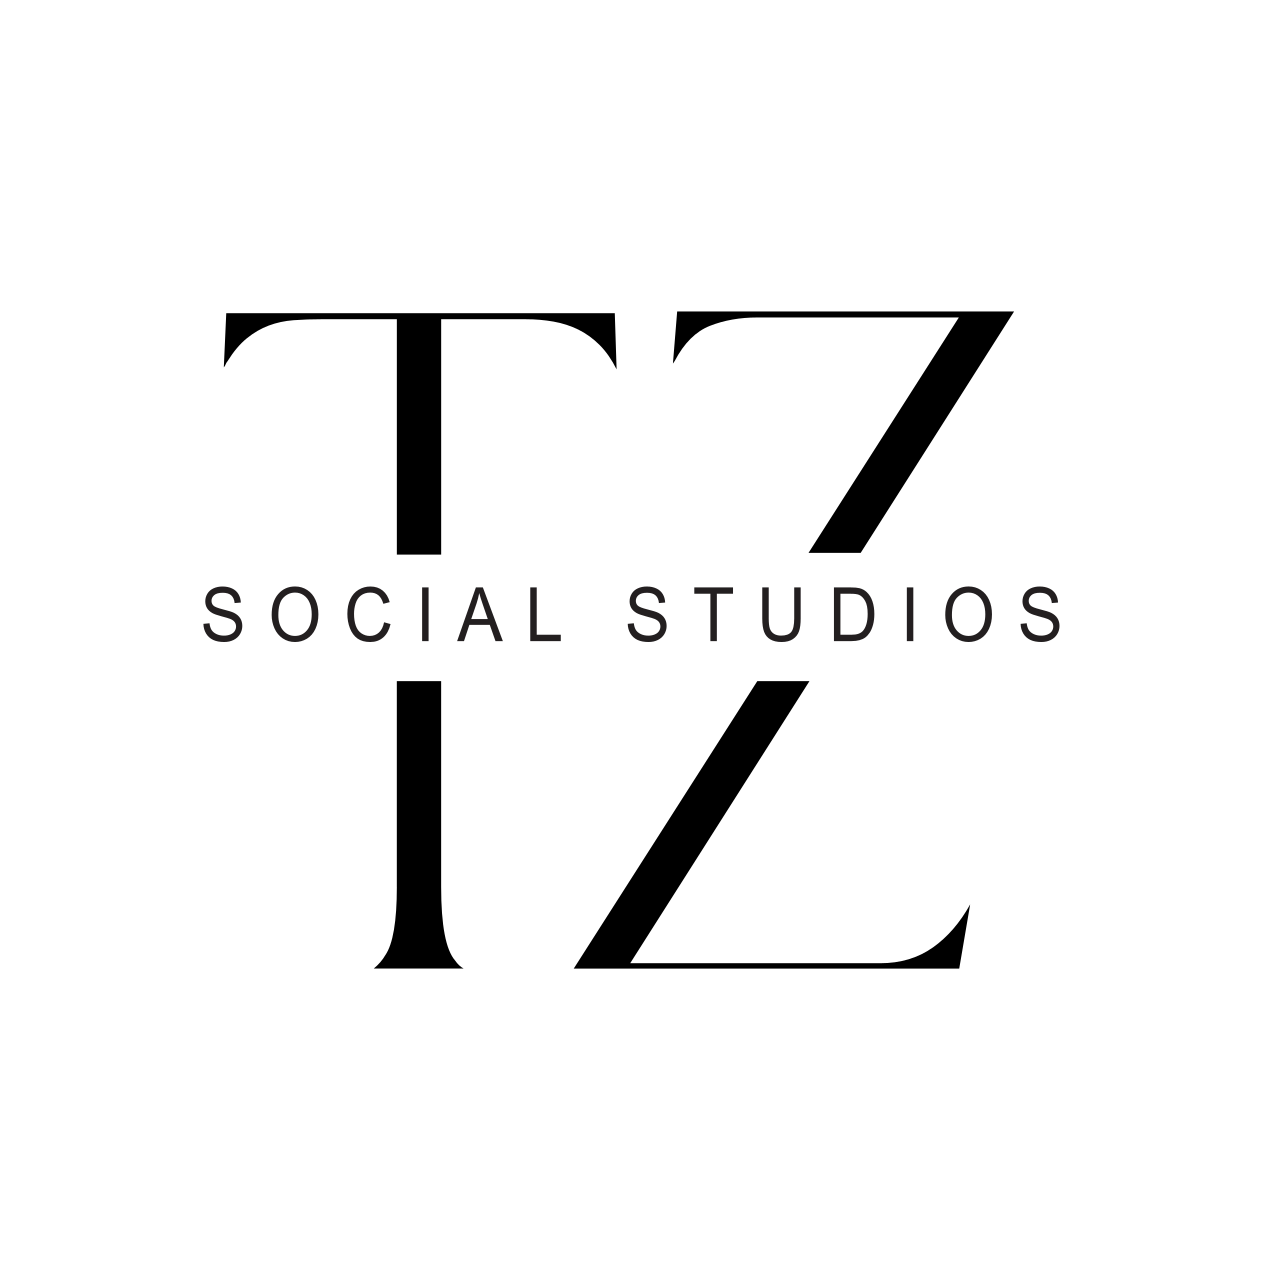 TZ Social Studios